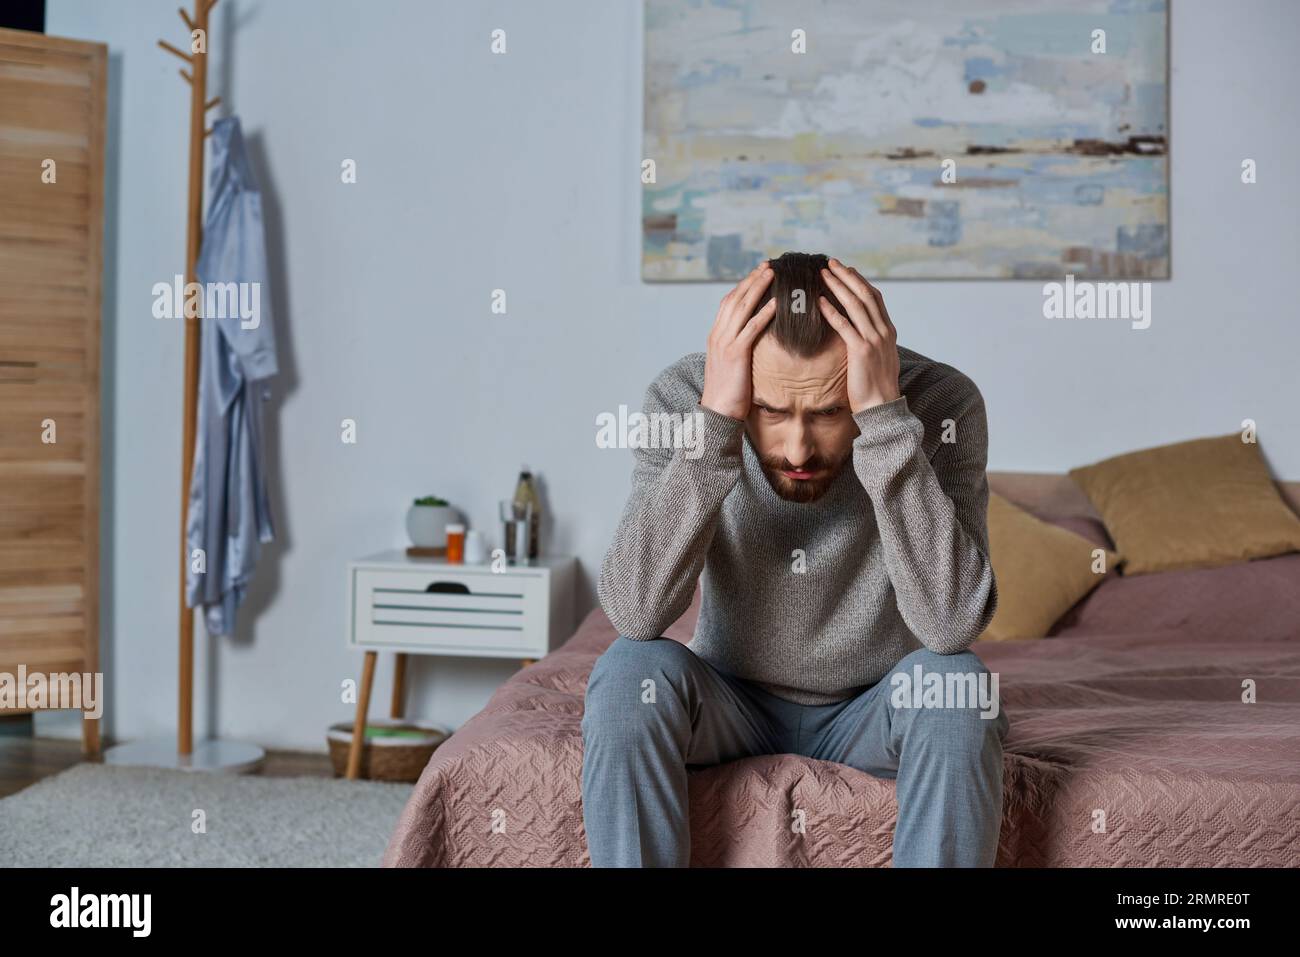 uomo stressato che guarda lontano e seduto sul letto in una camera da letto moderna, dipingendo sulle pareti, solitudine, preoccupazione Foto Stock